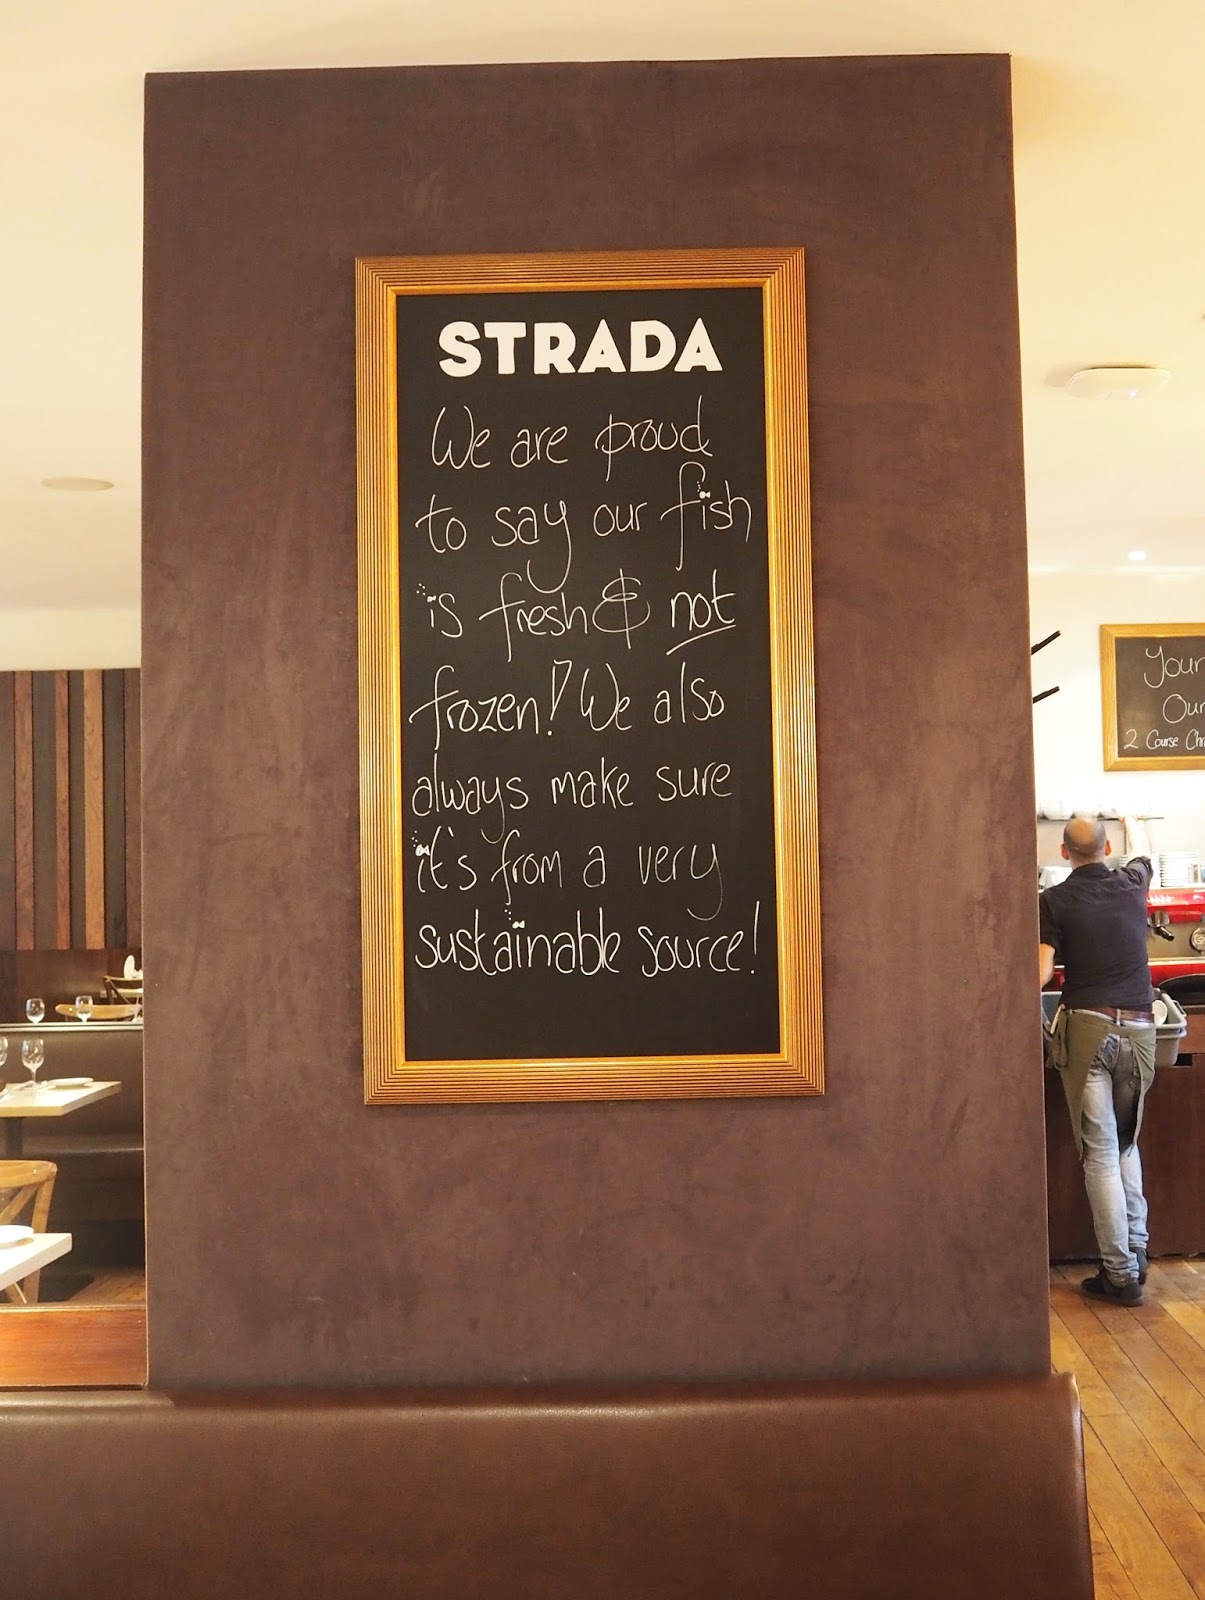 Strada Italian Restaurant, Horsham, UK Blogger, Restaurant Review, Italian Food, Food Blogger West Sussex Blogger, Katie Kirk Loves